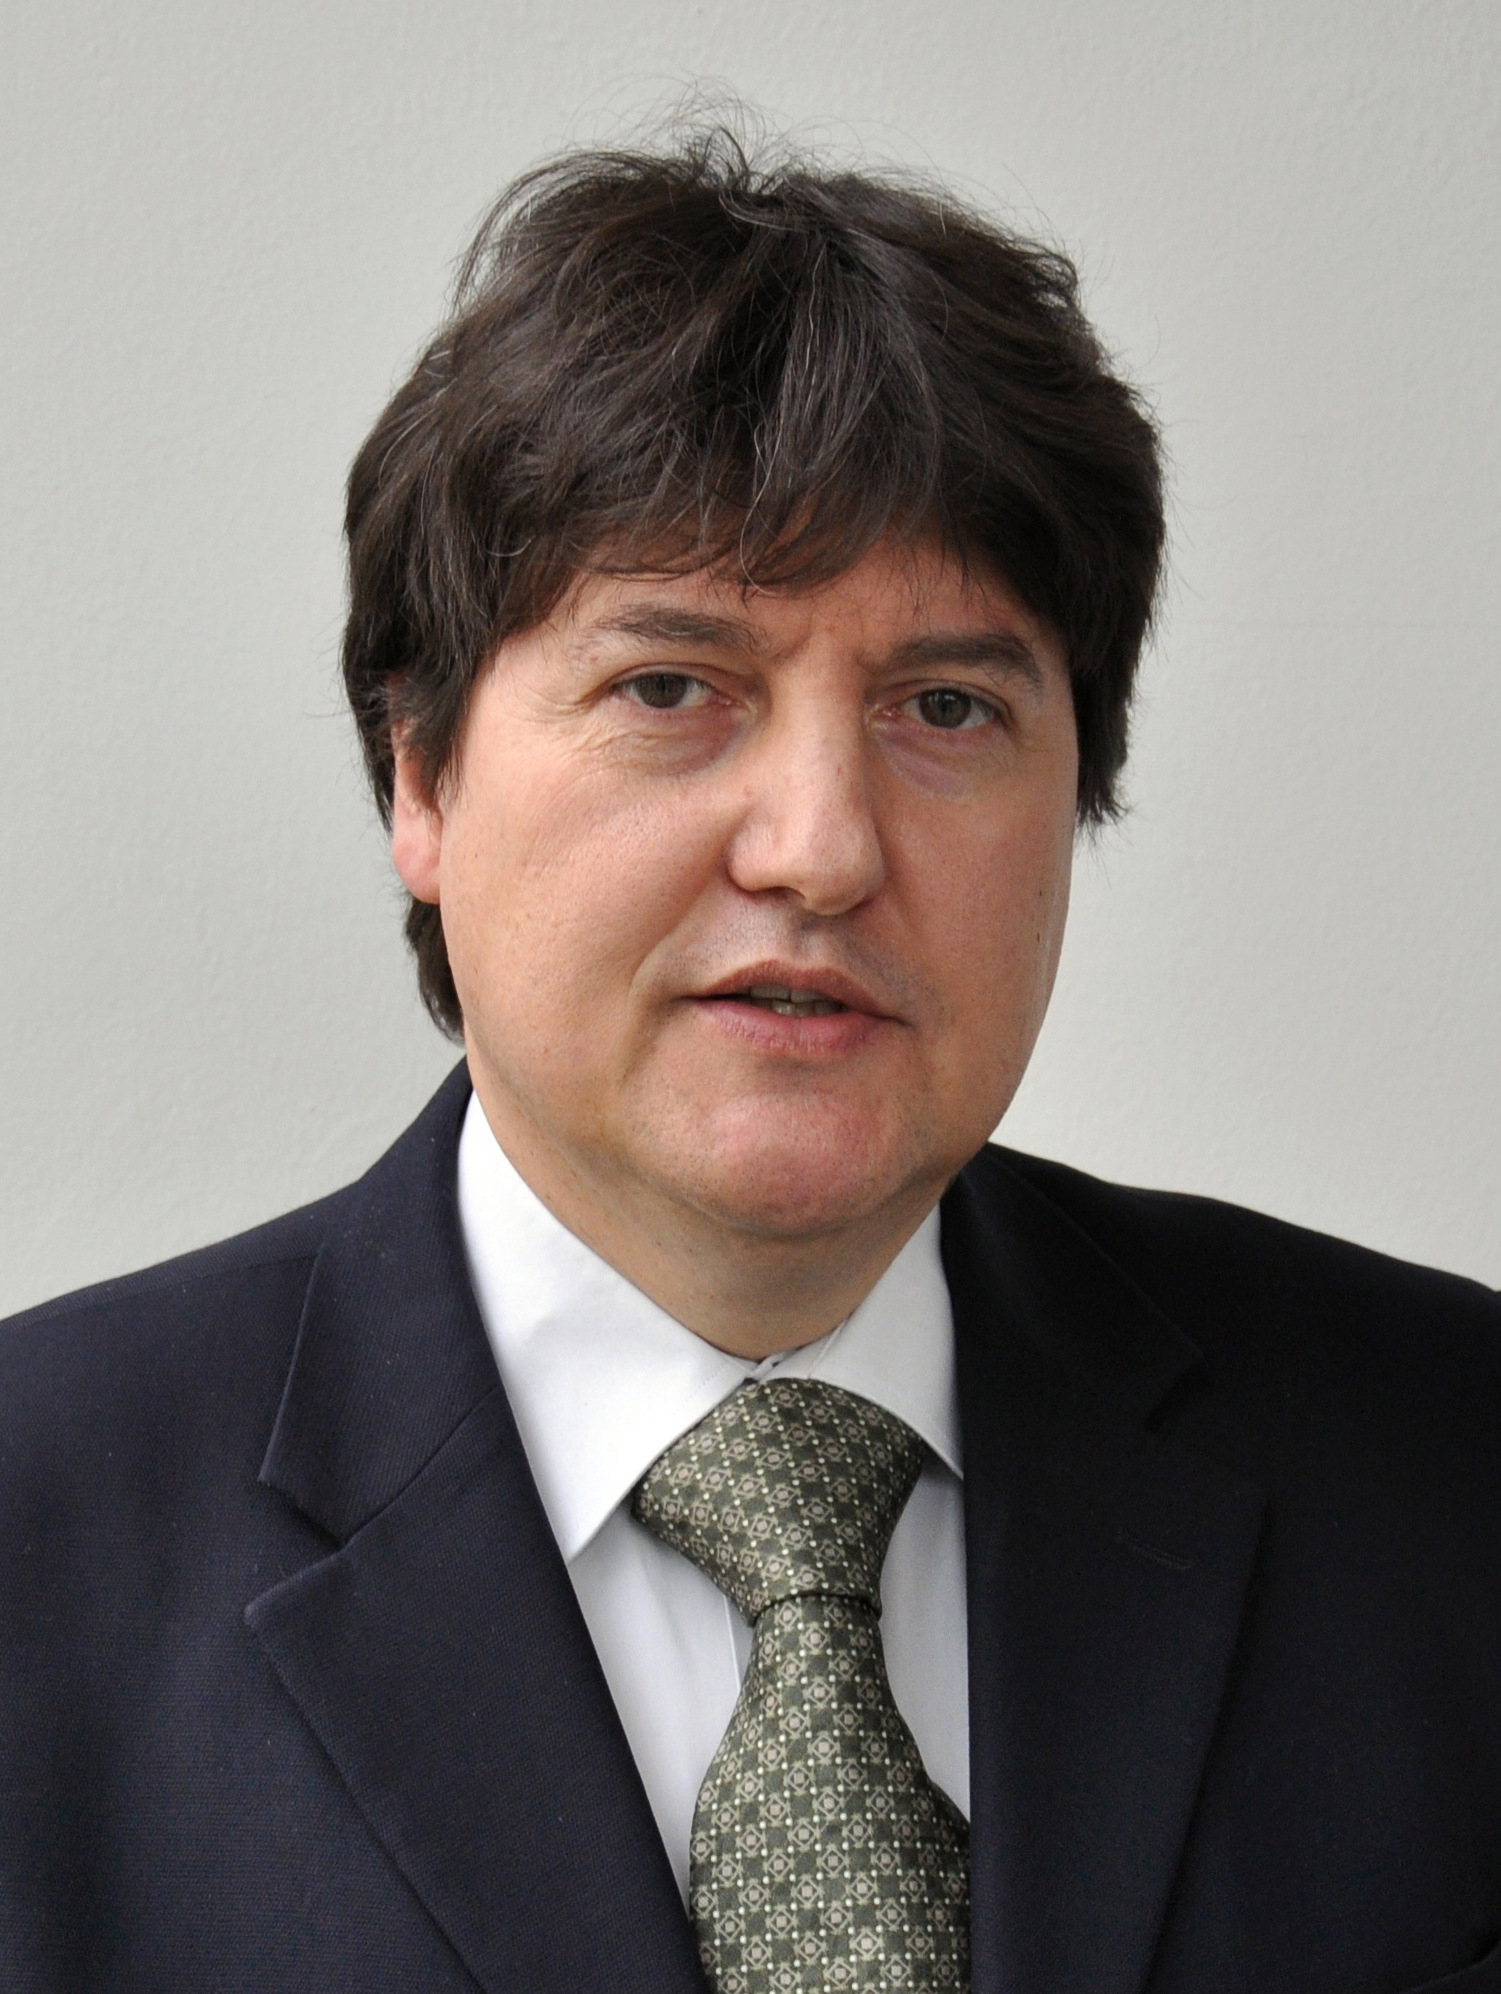 Aldo R. Boccaccini